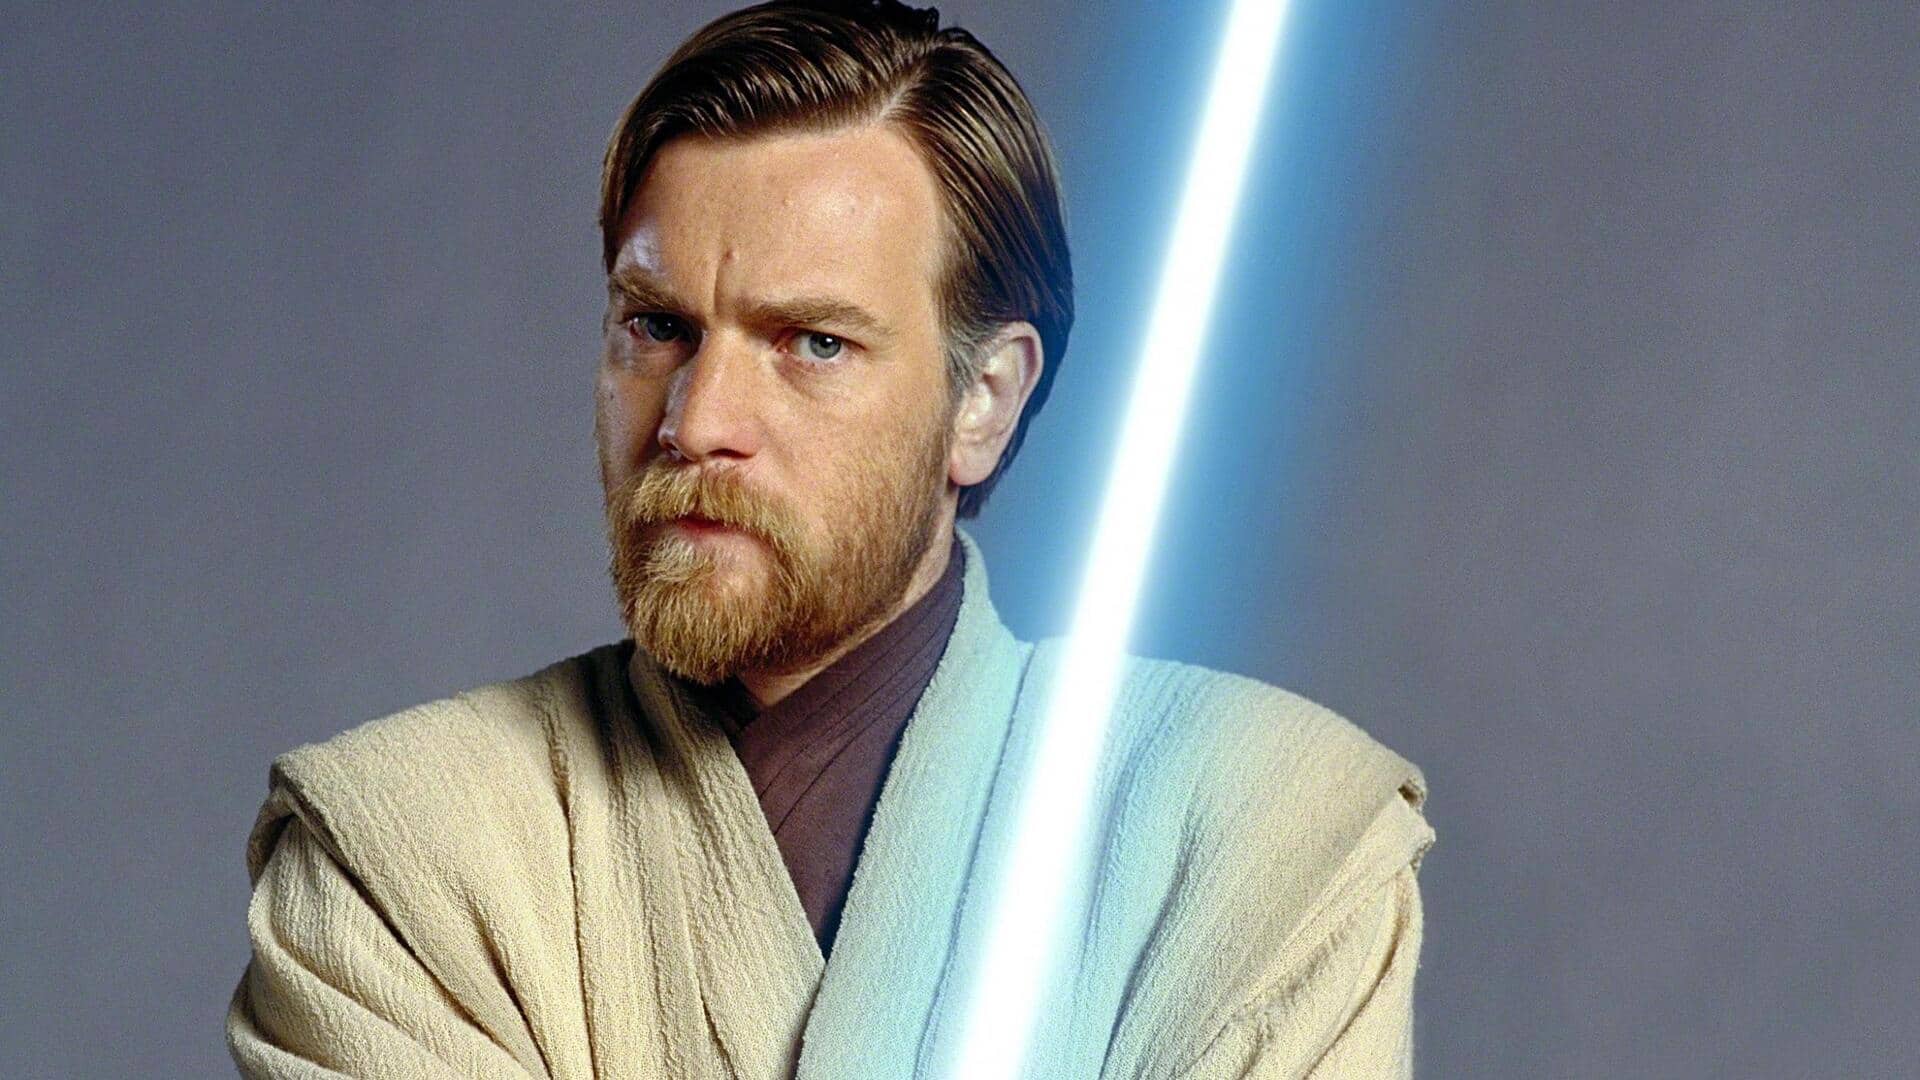 Ewan McGregor expresses interest in revisiting 'Star Wars' universe